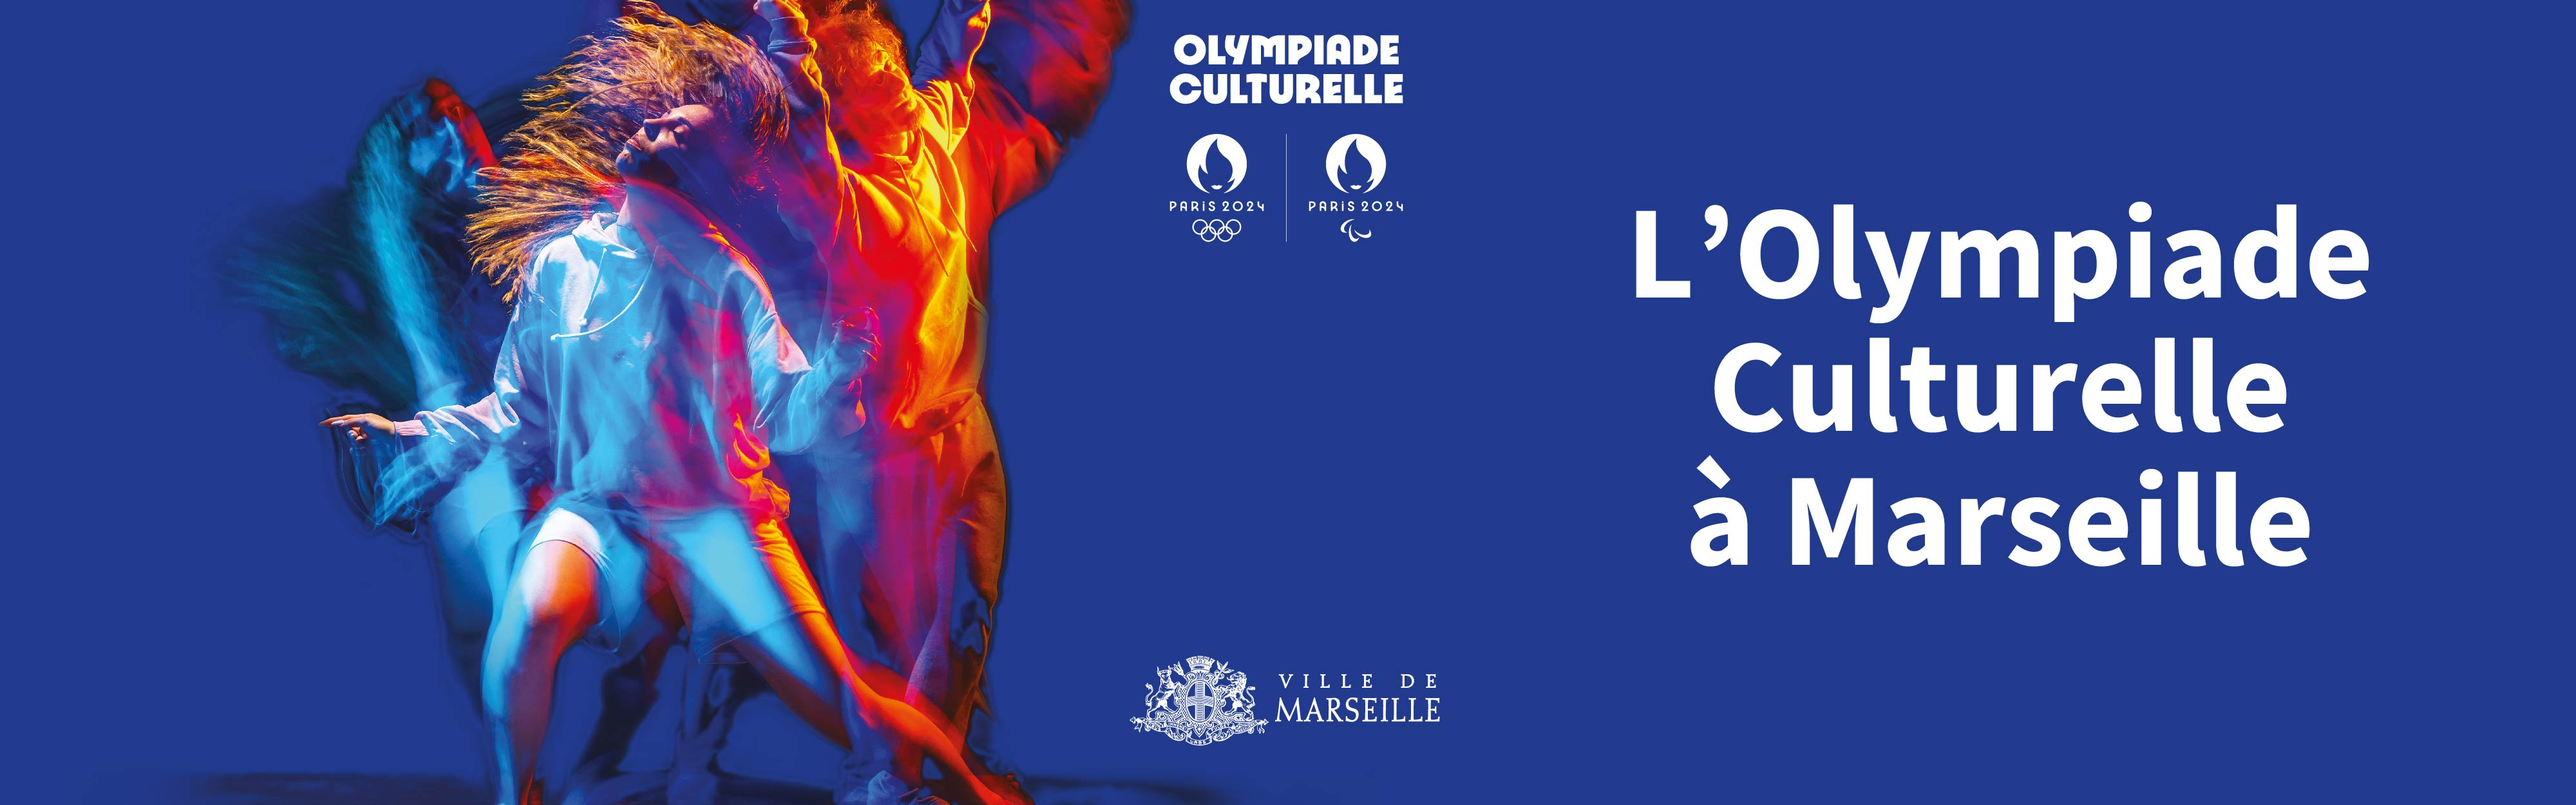 La Ville de Marseille s'engage pour l'Olympiade Culturelle